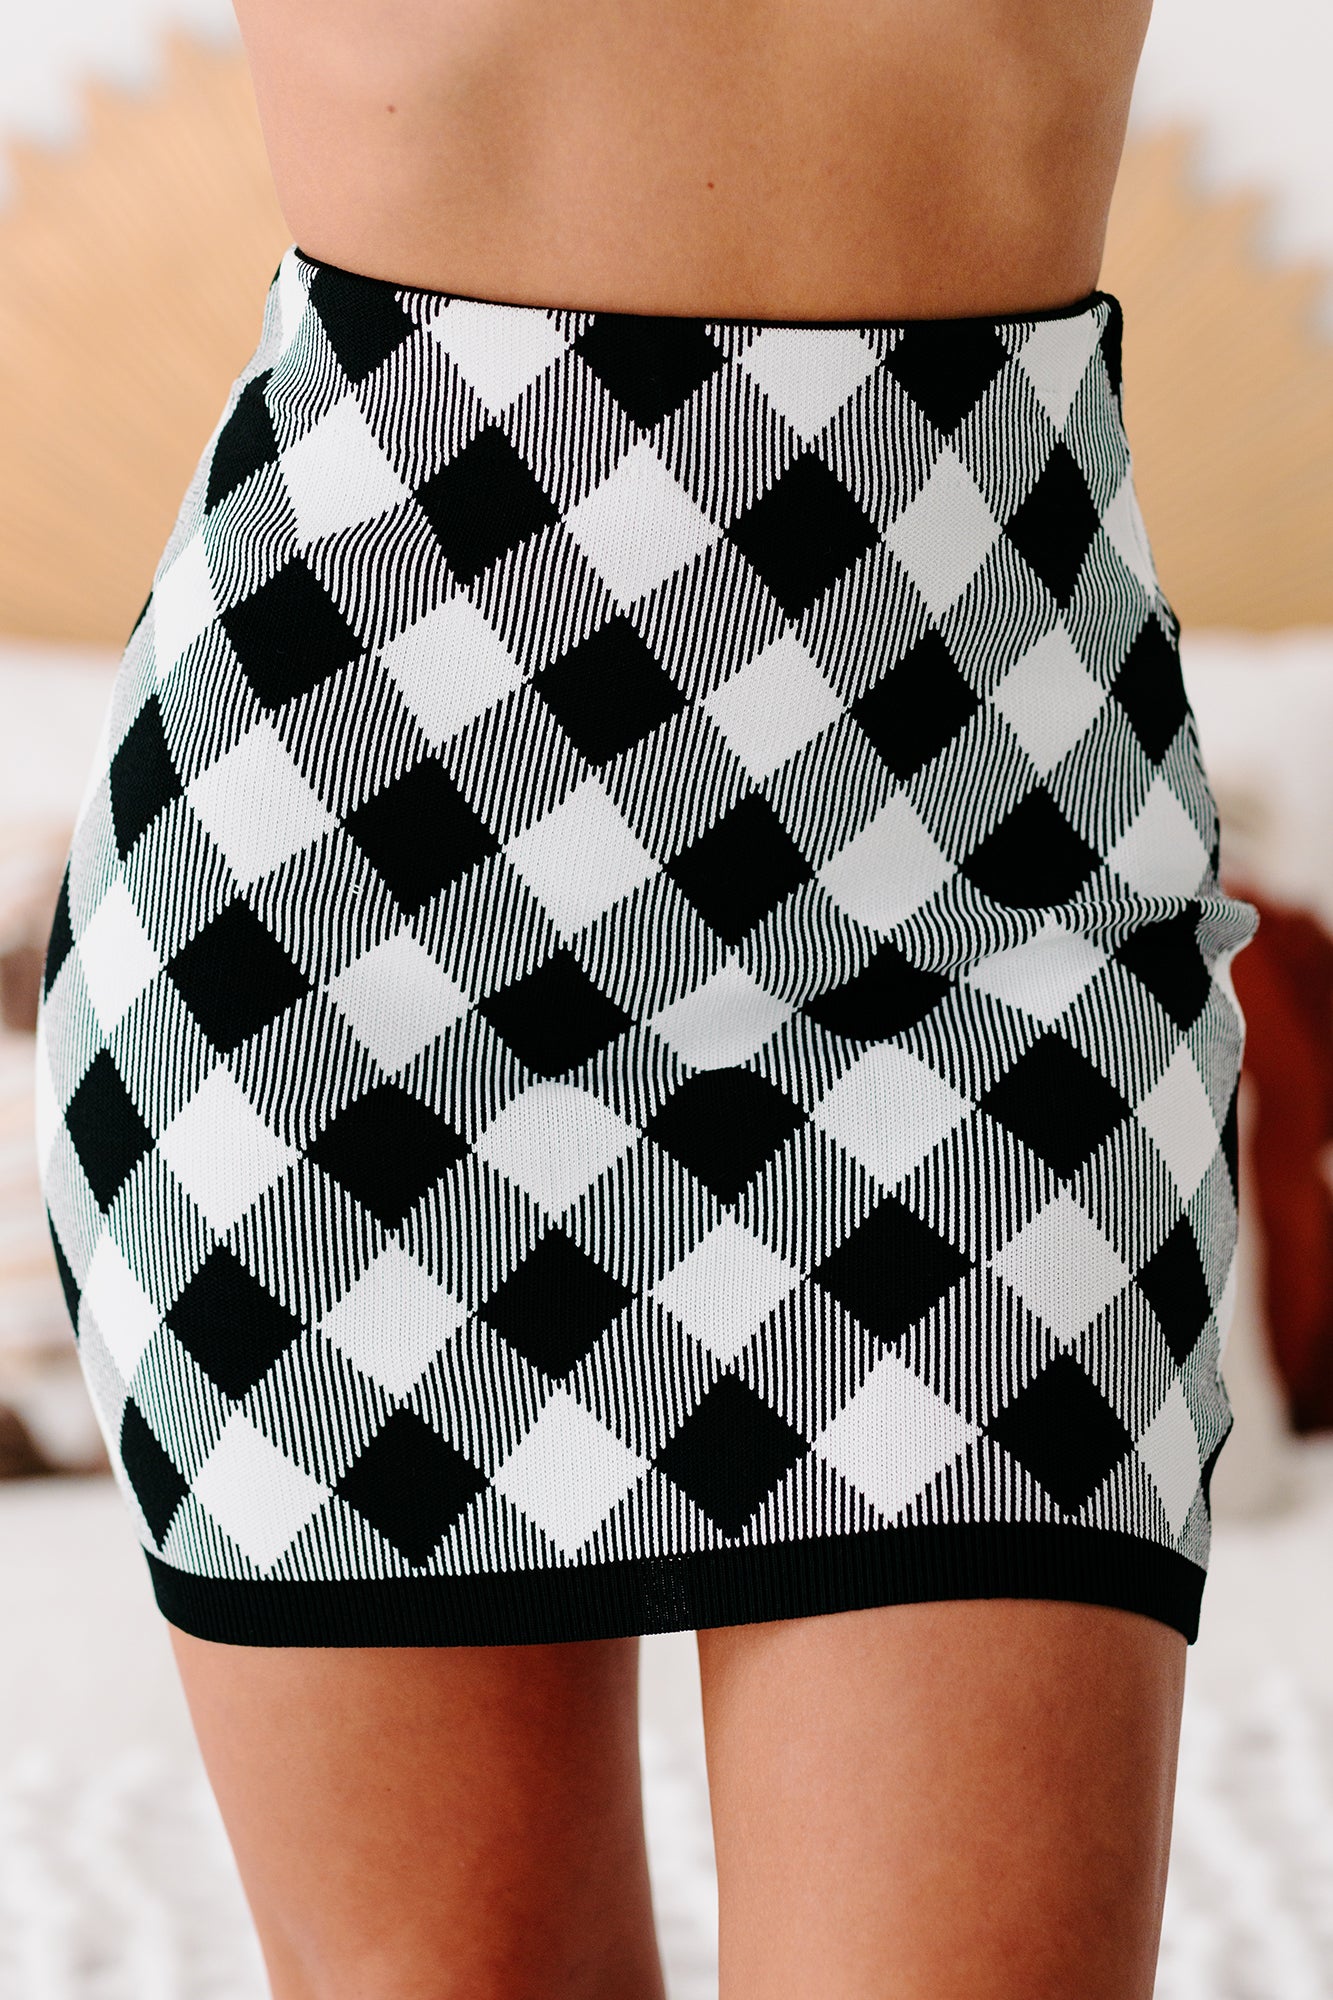 Extra Credit Plaid Crop Top & Skirt Set (Black) - NanaMacs